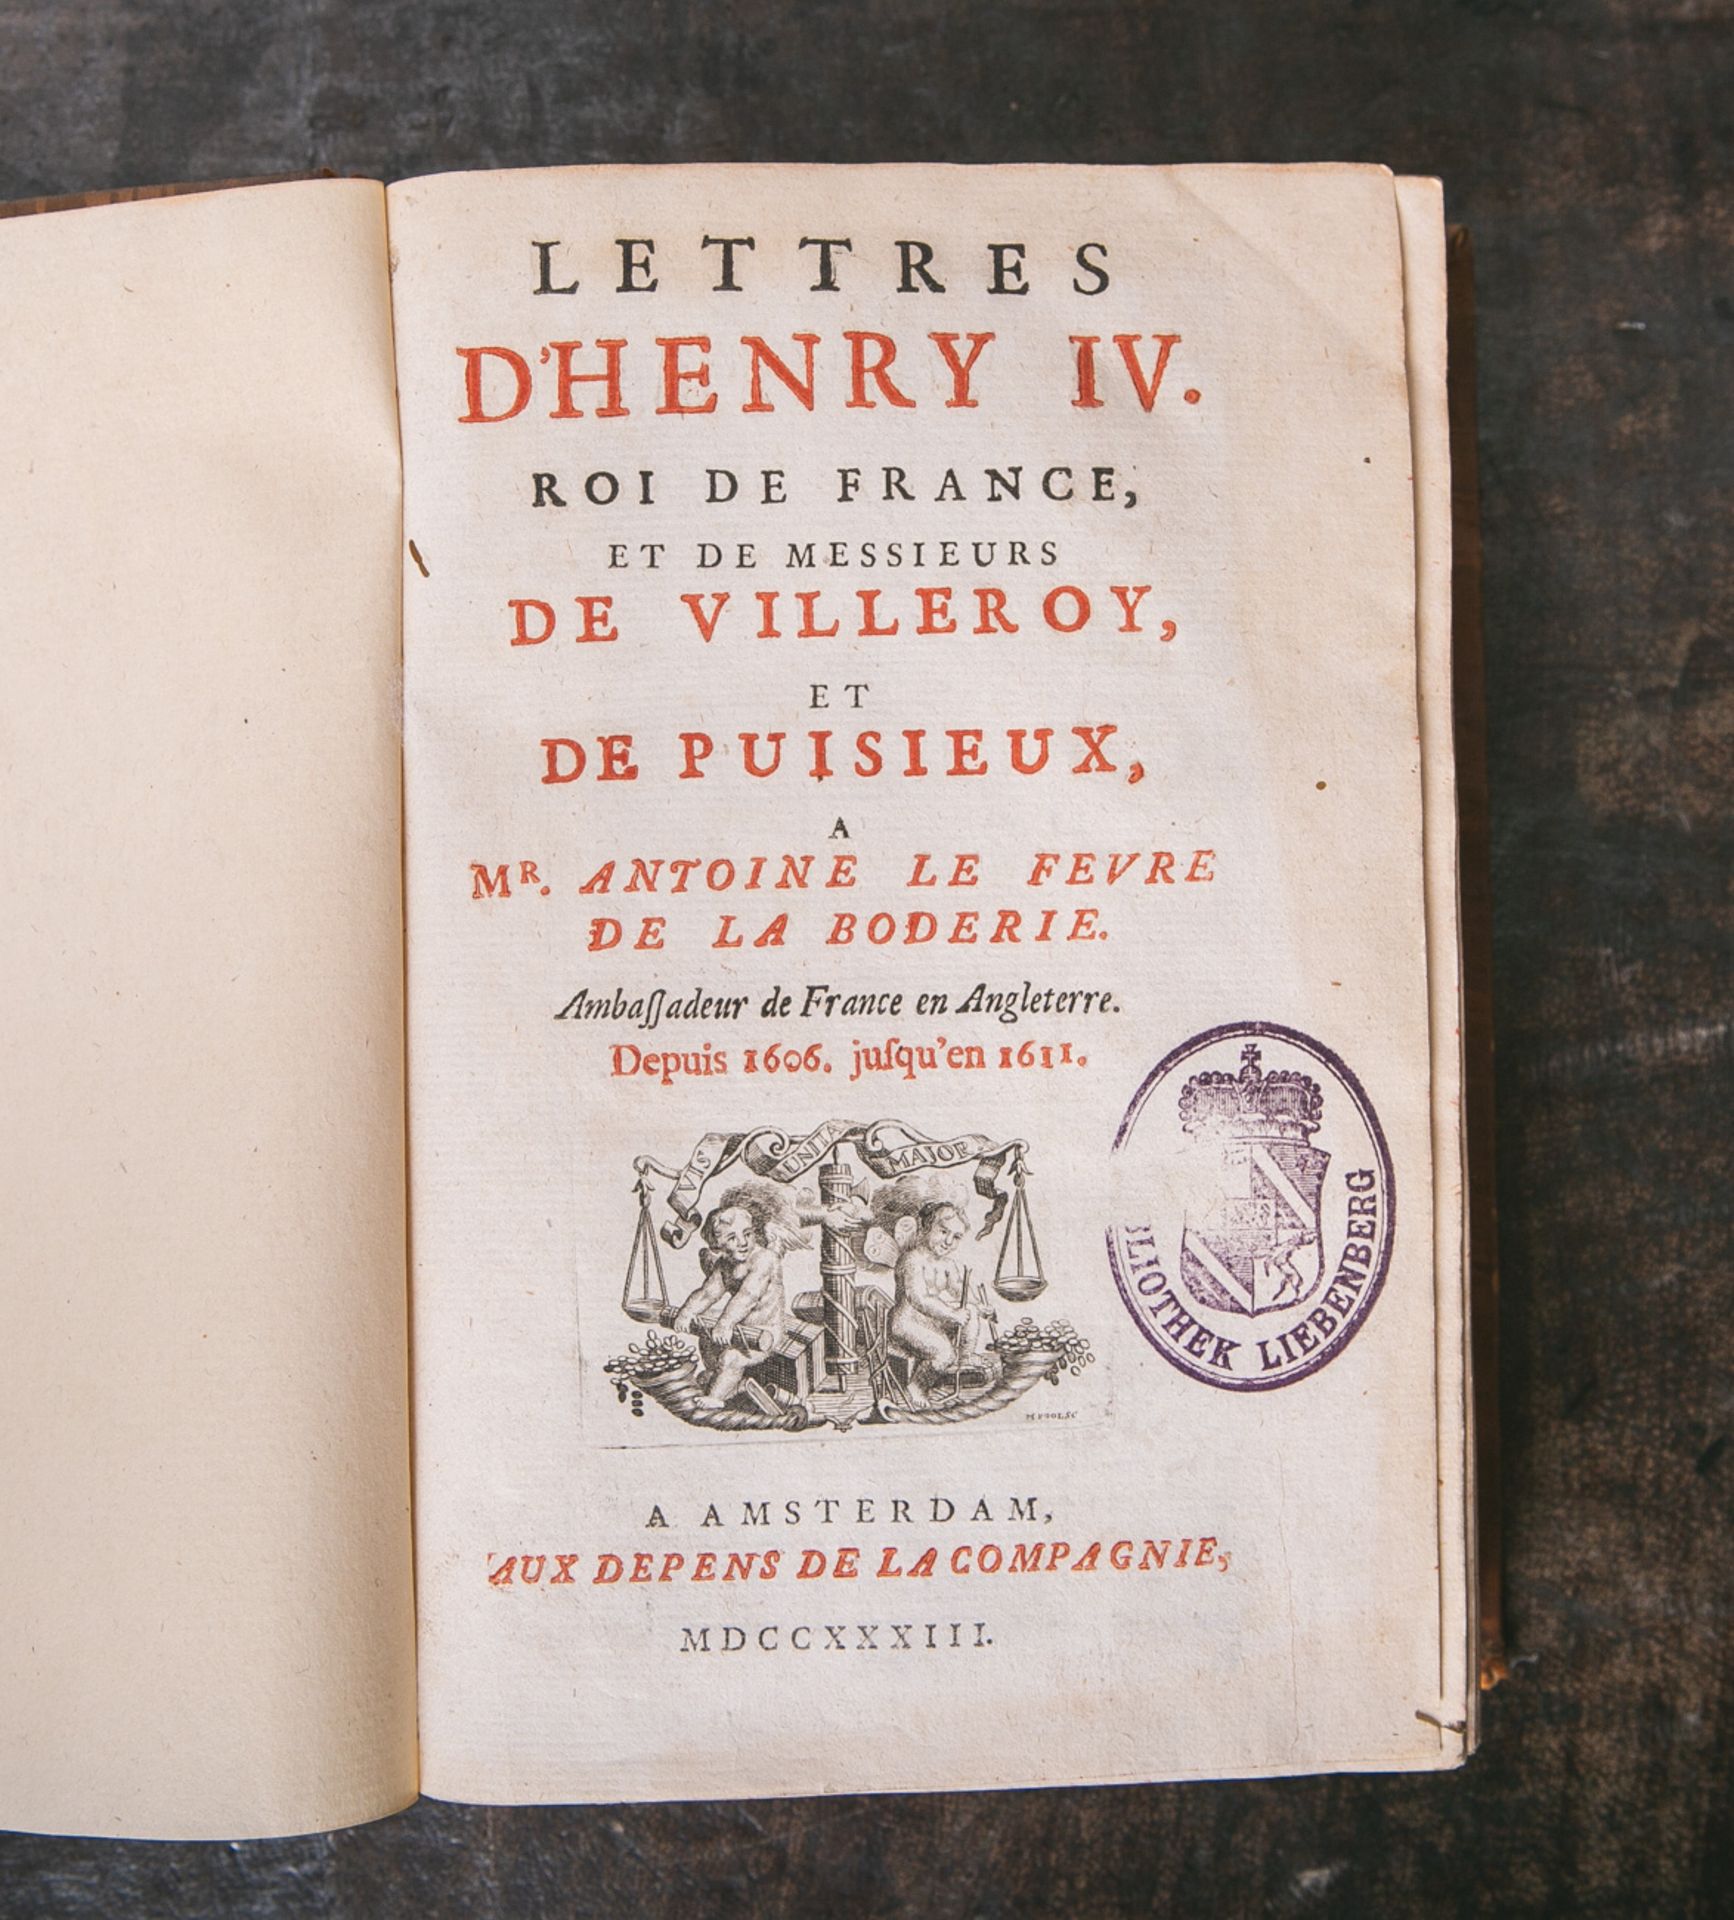 "Lettres D'henry IV. Roi de France, et